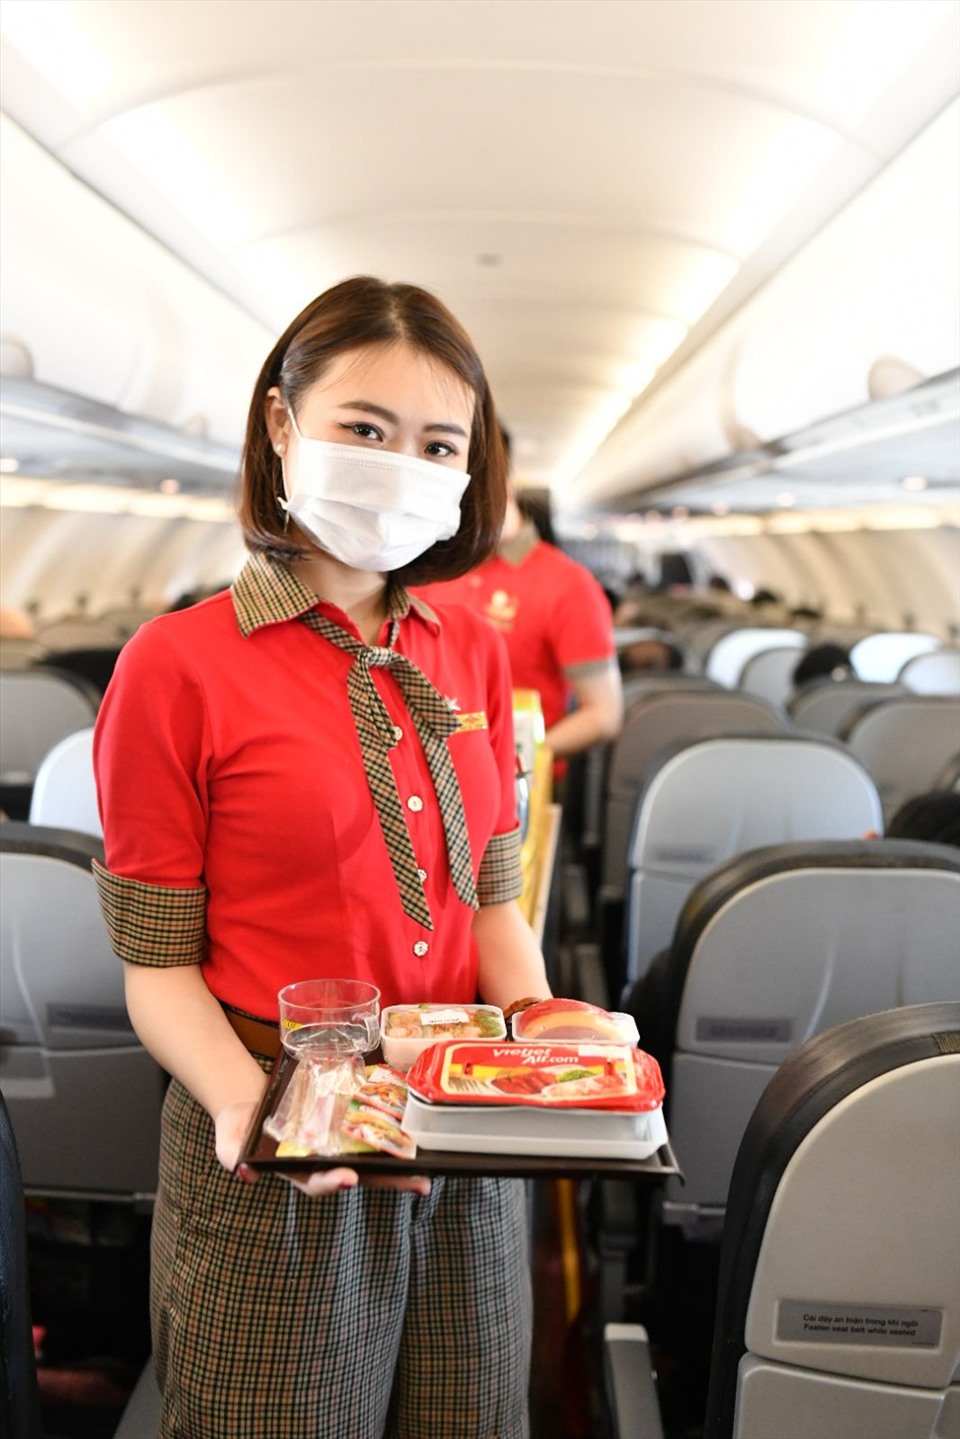 Chuyến bay đặc biệt này được Vietjet phục vụ theo tiêu chuẩn các chuyến bay quốc tế của hãng với đa dạng lựa chọn về suất ăn và đồ uống. Suất ăn nóng của Vietjet trên các chuyến bay luôn được hành khách đánh giá cao về độ tươi ngon và tỉ mỉ trong chế biến.